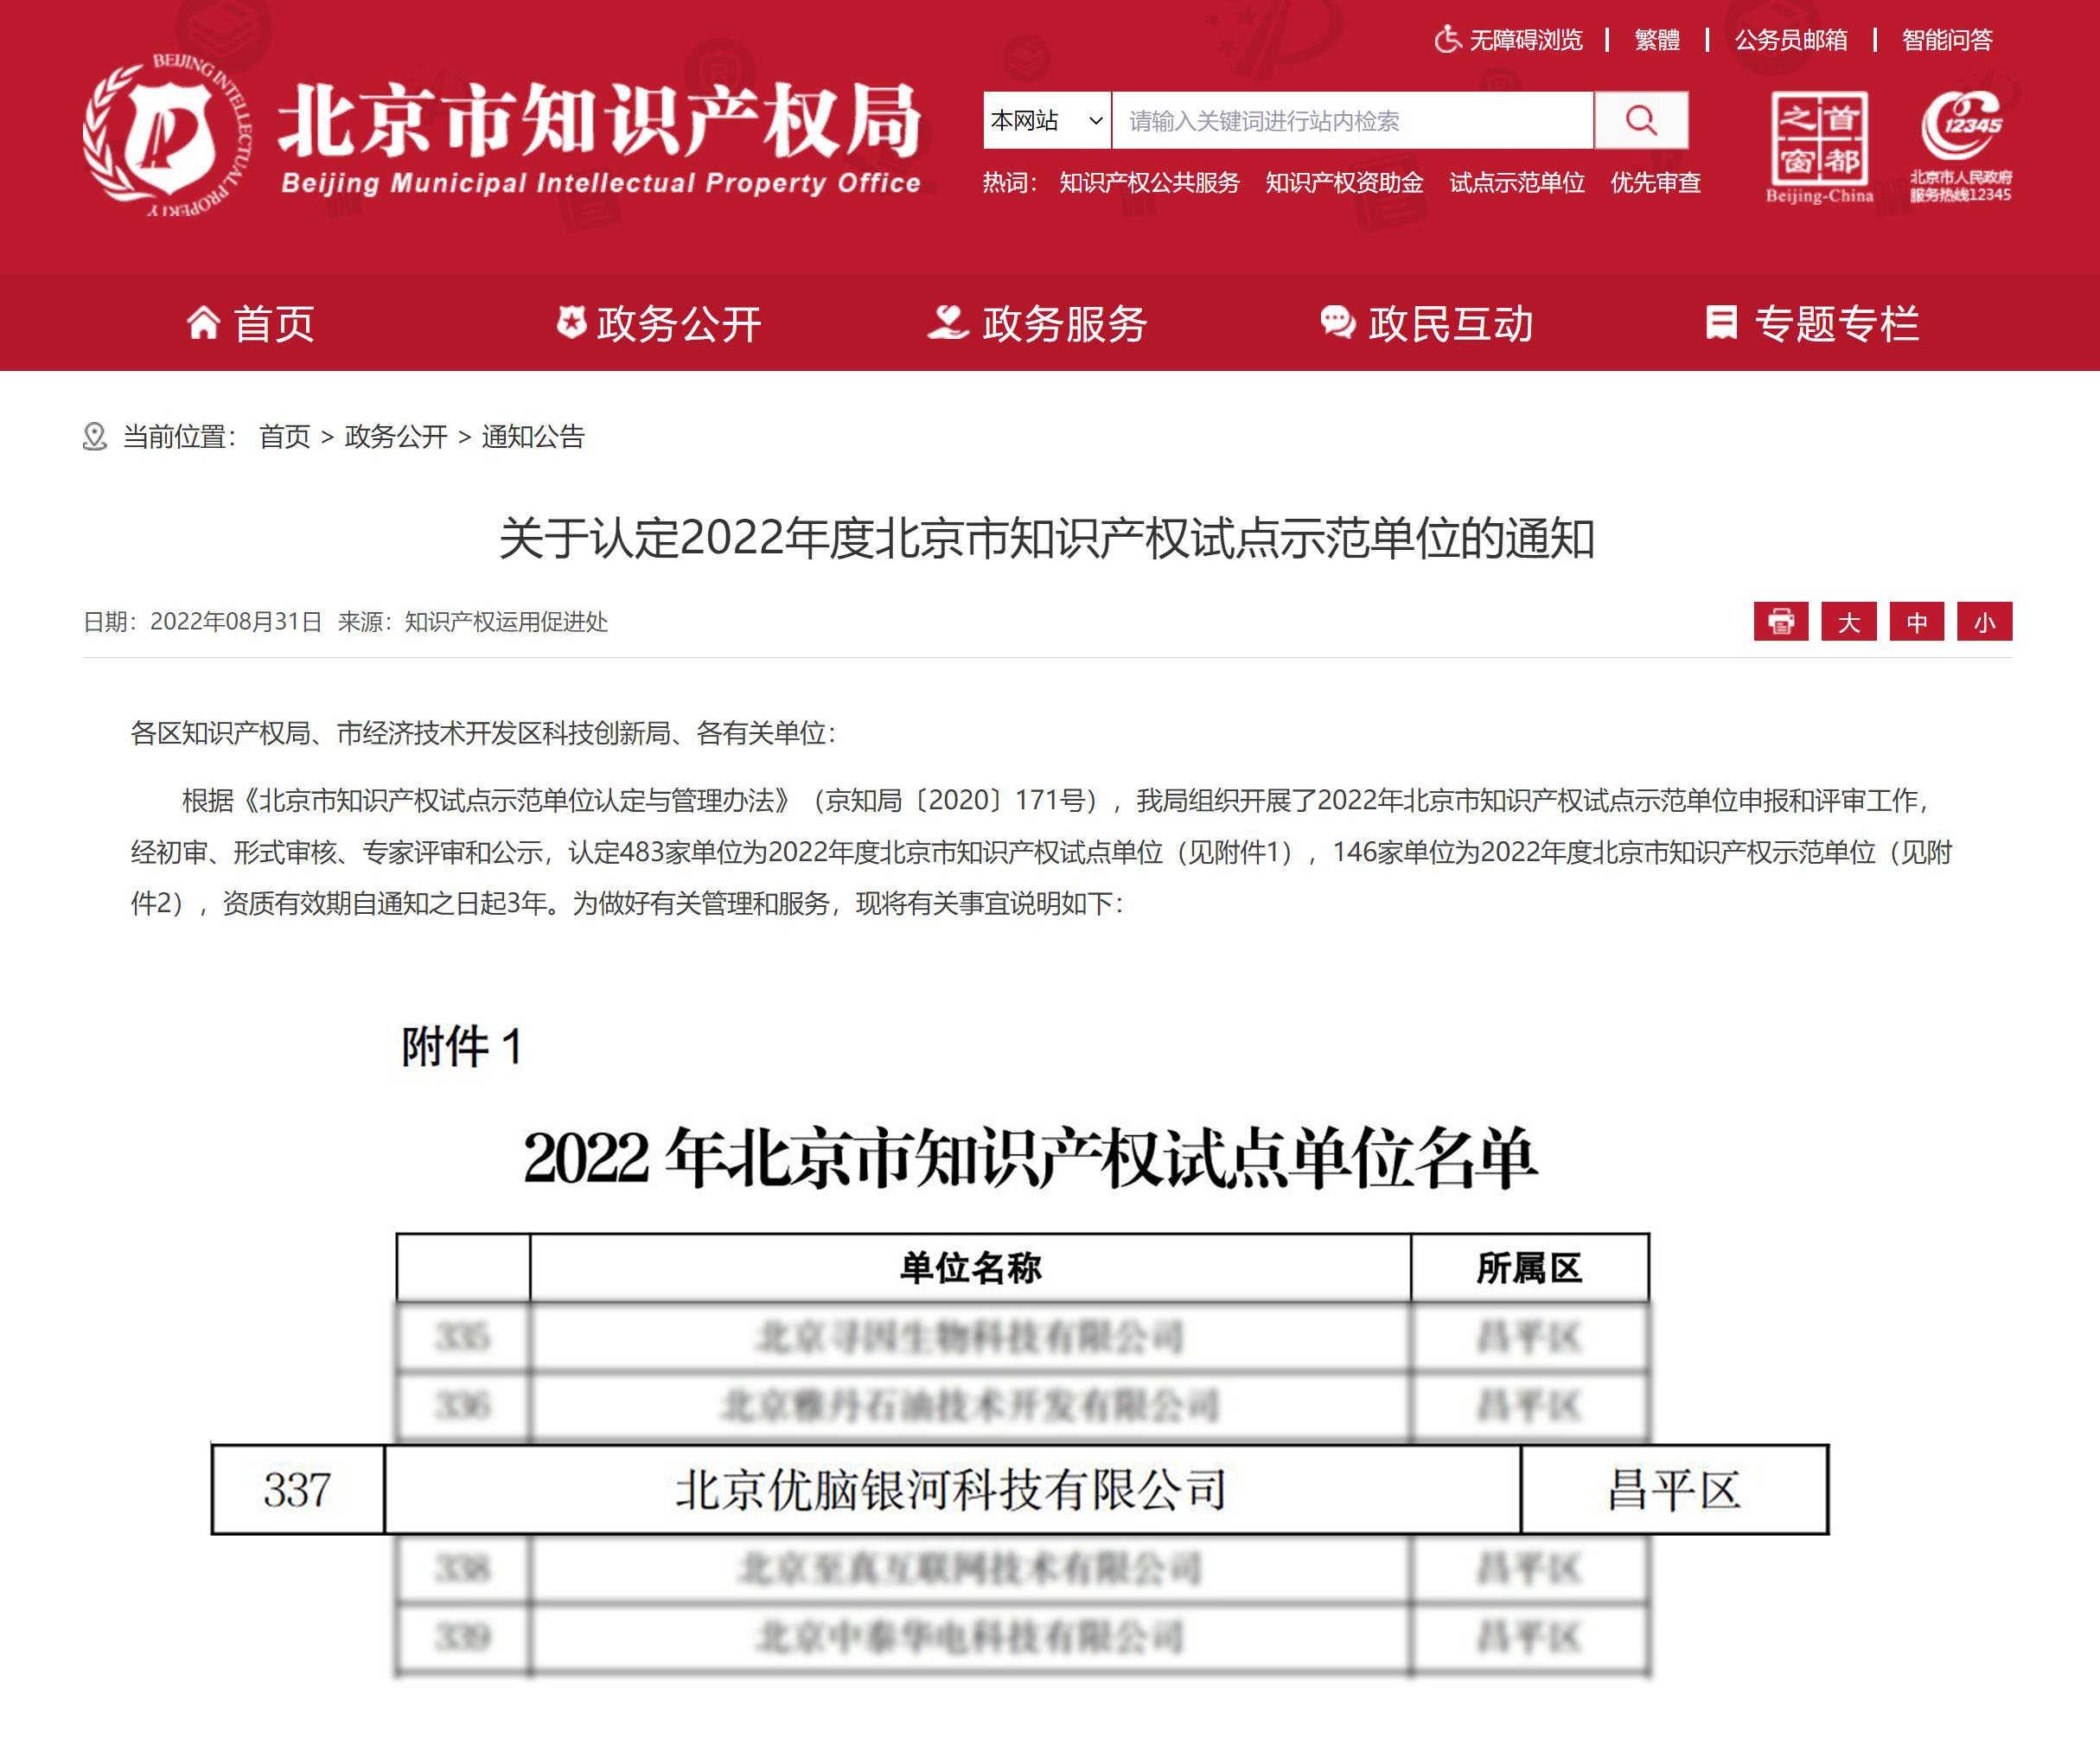 创新引领发展 优脑银河获评“2022年度北京市知识产权试点单位”